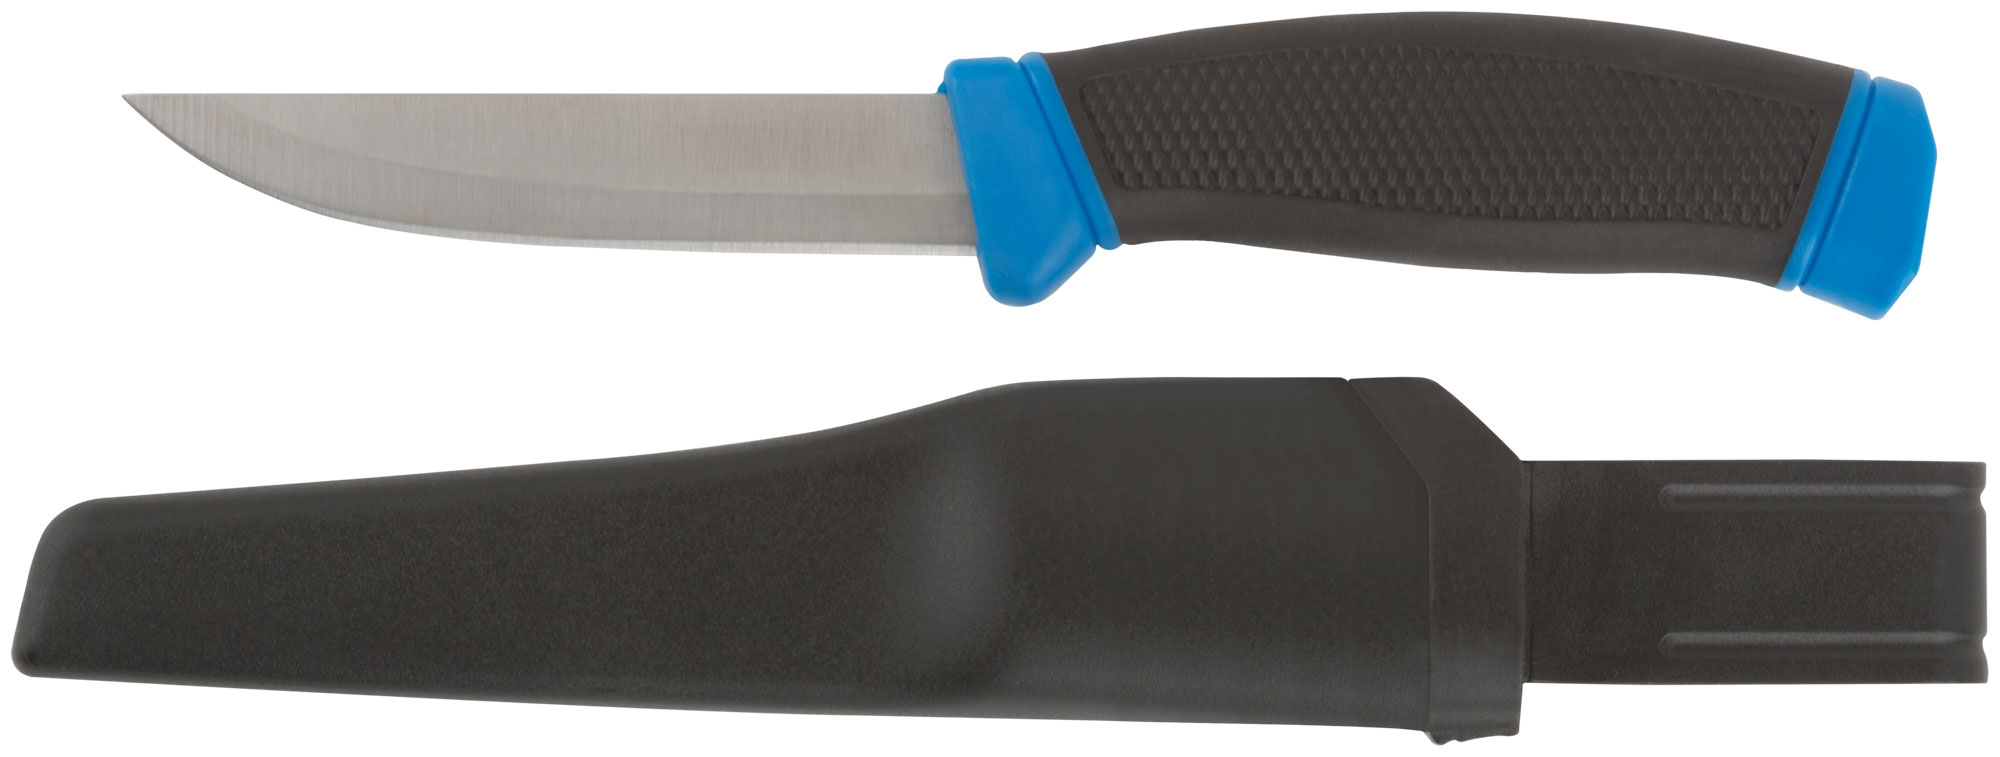 Нож строительный MOS нержавеющая сталь, прорезиненная ручка, лезвие 100 мм 10610М